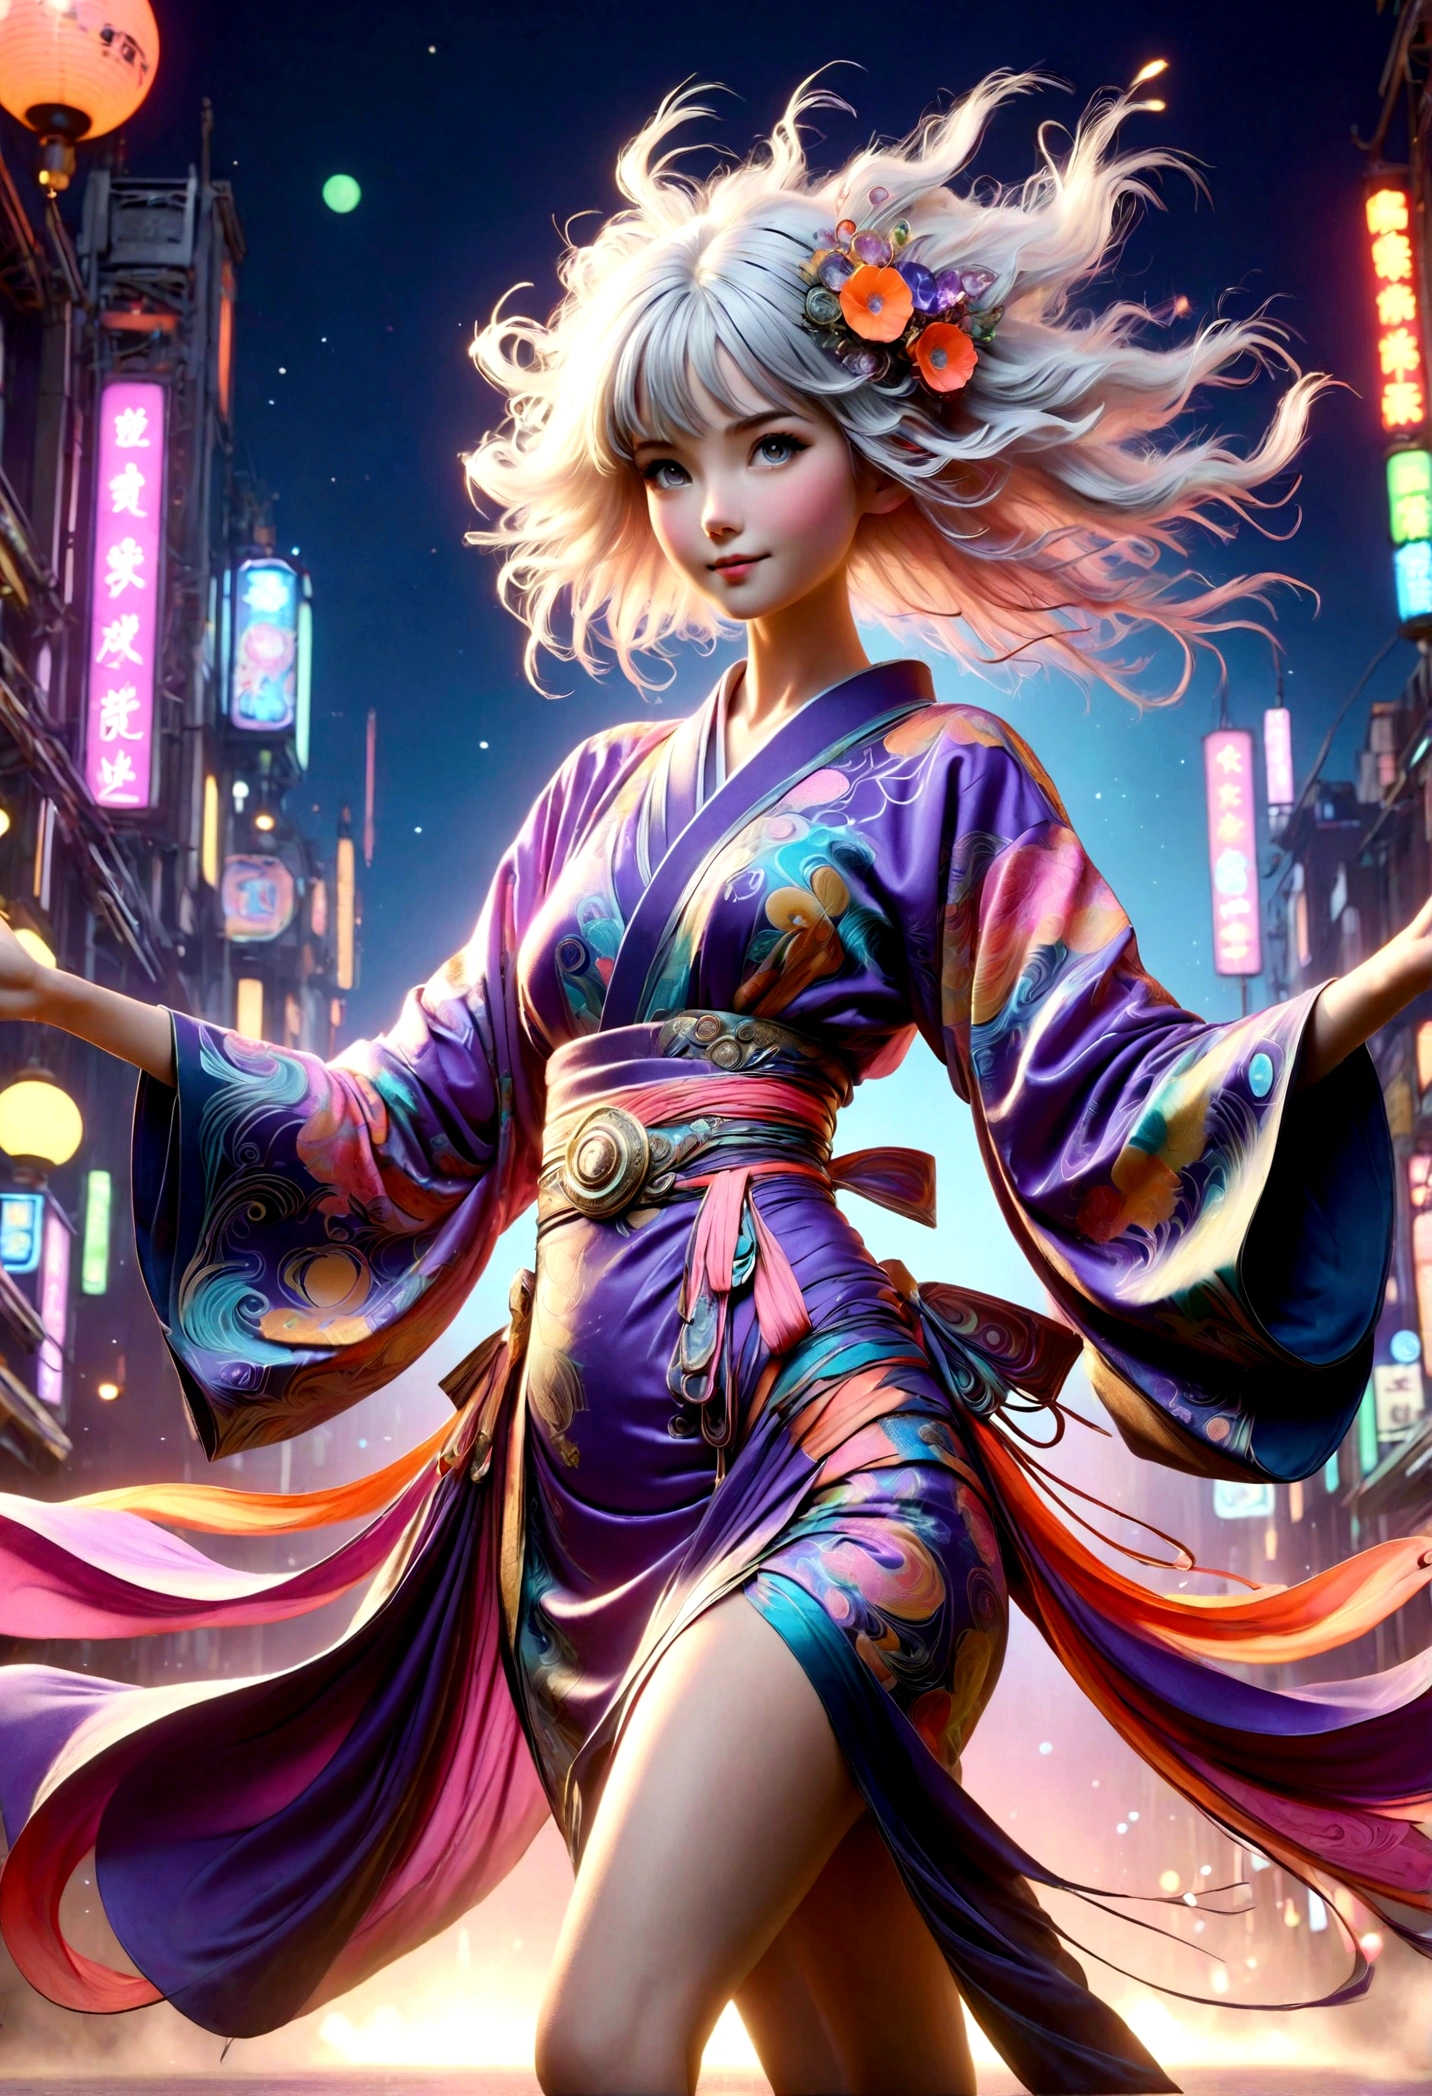 (cara ultra detallada, mirando hacia otro lado), (Ilustración de fantasía con gótico. & ukiyo-e & arte cómico), (La escena mira hacia la pista desde abajo.:1.4), (cuerpo completo, Una mujer joven con pelo blanco., flequillo contundente, Cabello muy largo y despeinado., lavender eyes), (Ella está saltando, cantando, baile, y caminando por la pasarela de un desfile de modas en un estilo vanguardista, kimono japonés futurista de color neón, sonrientes y llamativas poses atrevidas), (En el fondo, luces de varios colores en estilo art nouveau revolotean)